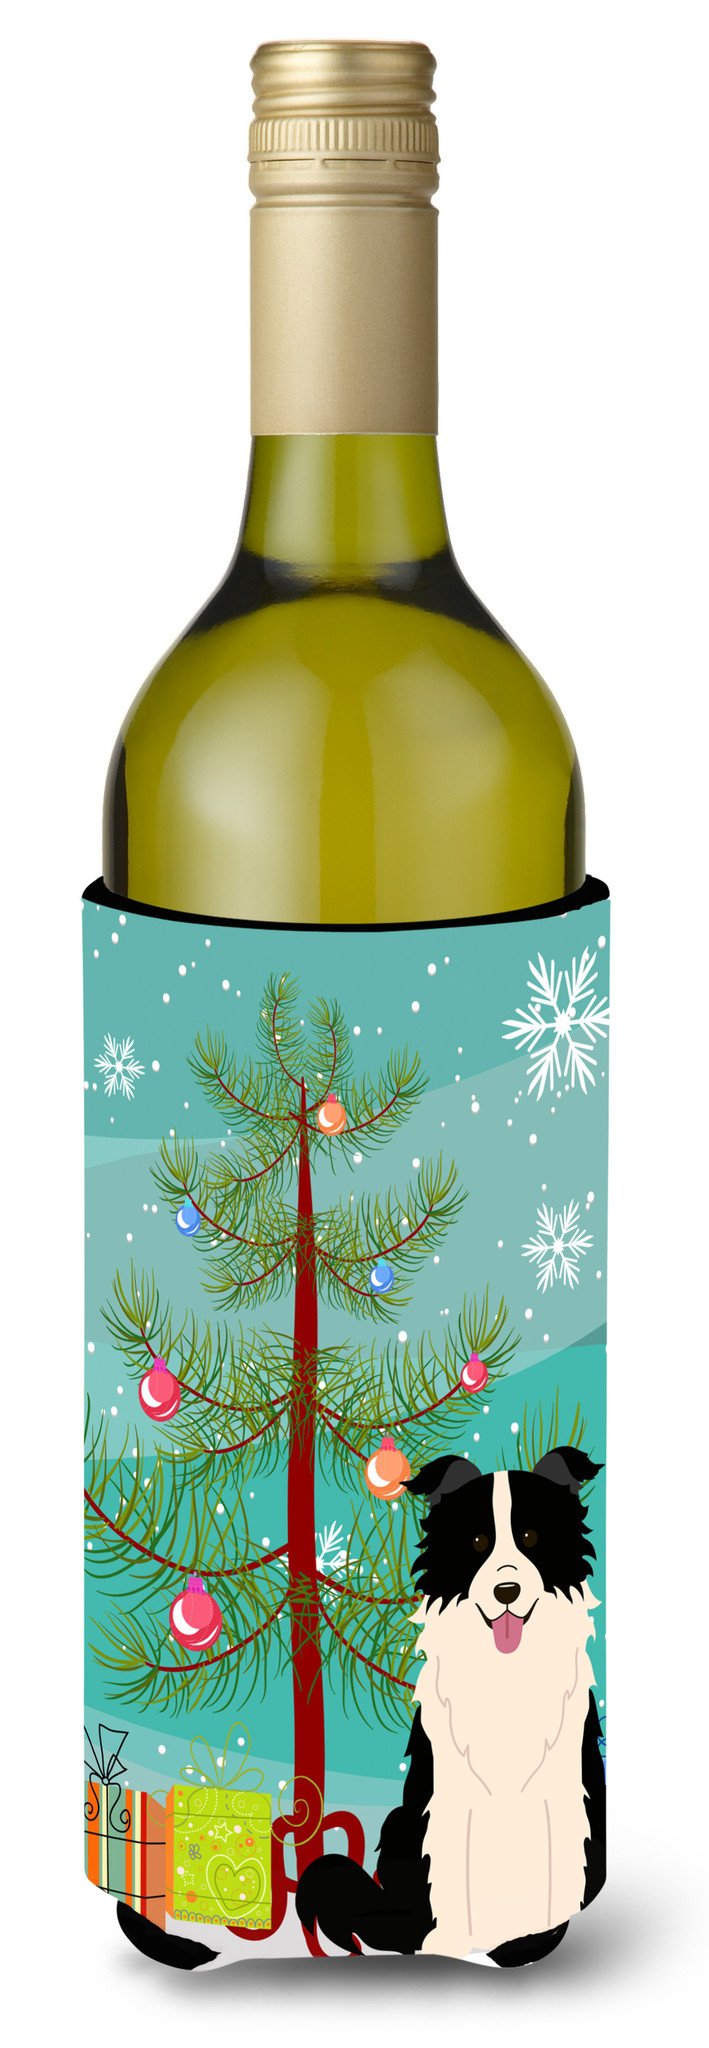 Merry Christmas Tree Border Collie Black White Wine Bottle Beverge Insulator Hugger BB4243LITERK by Caroline's Treasures